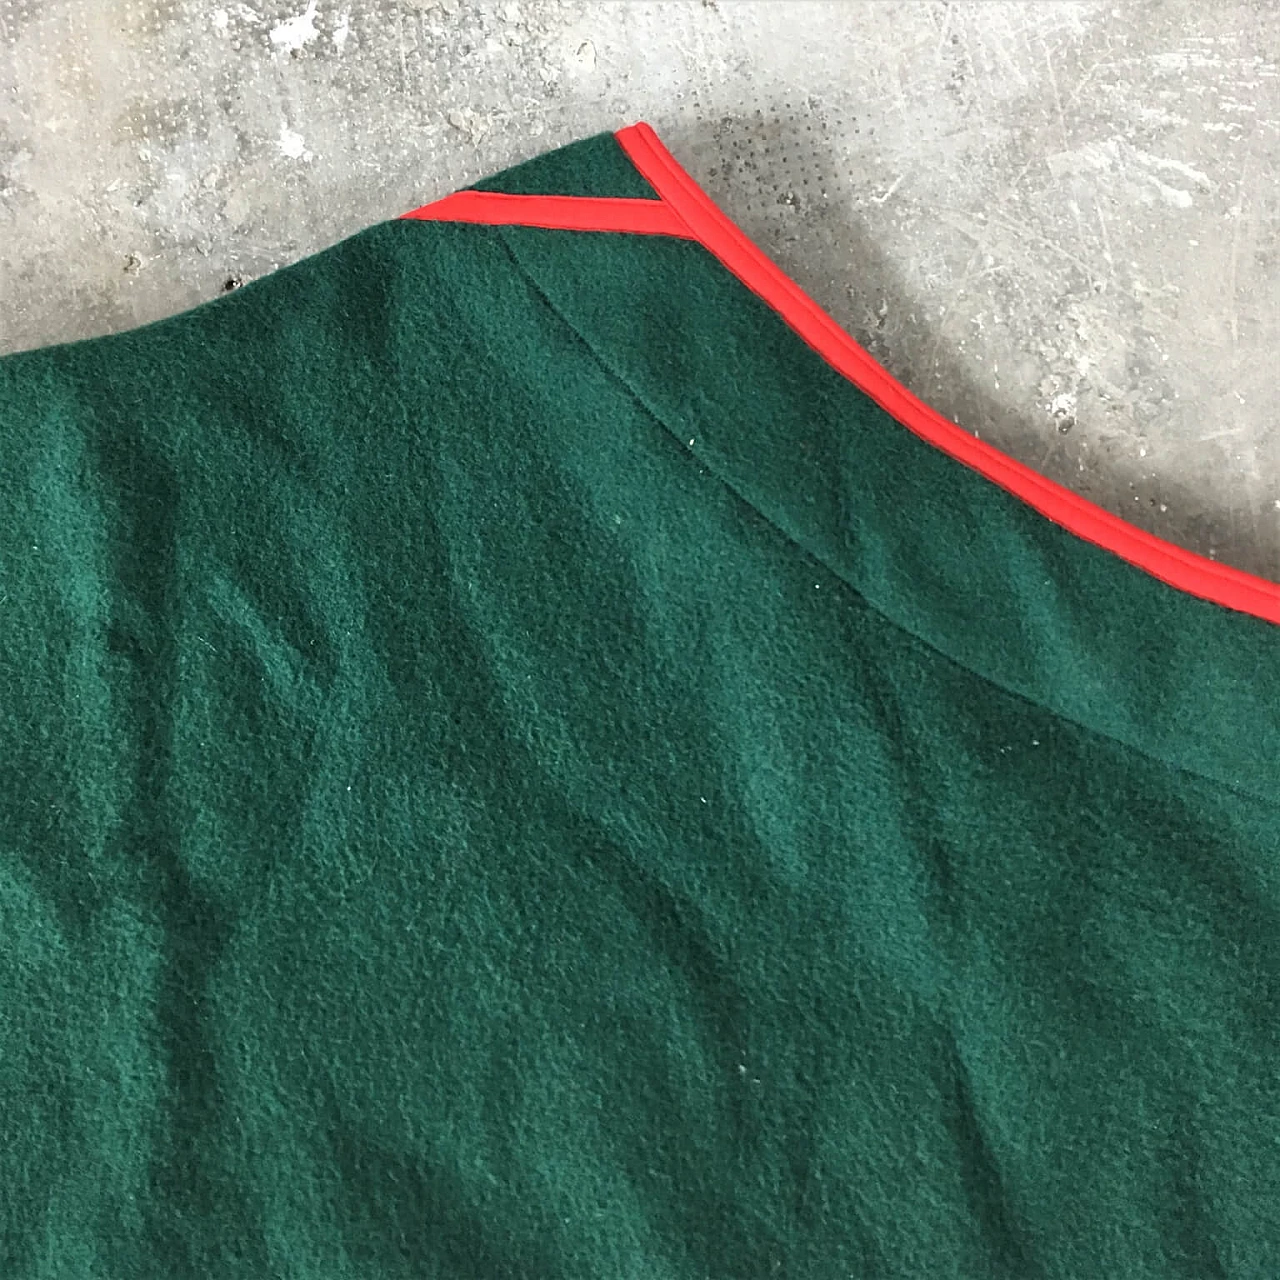 Coperta verde Selleria Pariani, realizzata a mano, pura lana vergine, profili rossi e cuoio, 1980 1071711